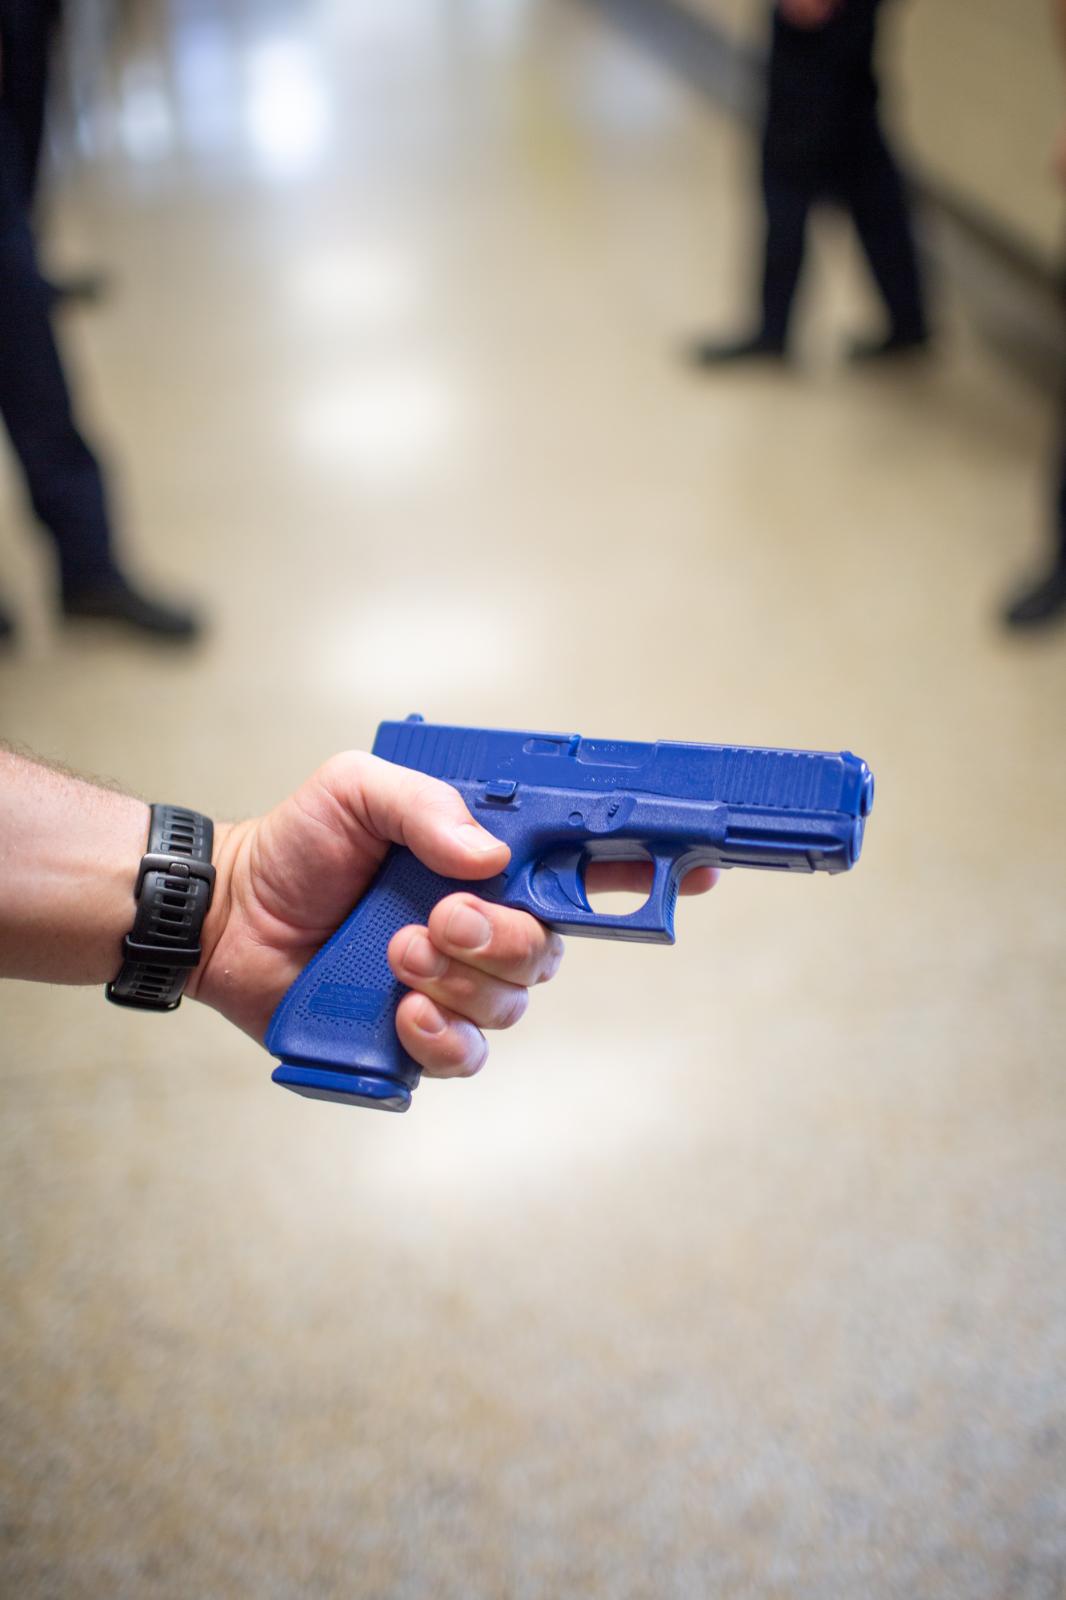 HELL DRILL * Warning: Sensitive Content  - An officer displays a "blue" replica handgun...